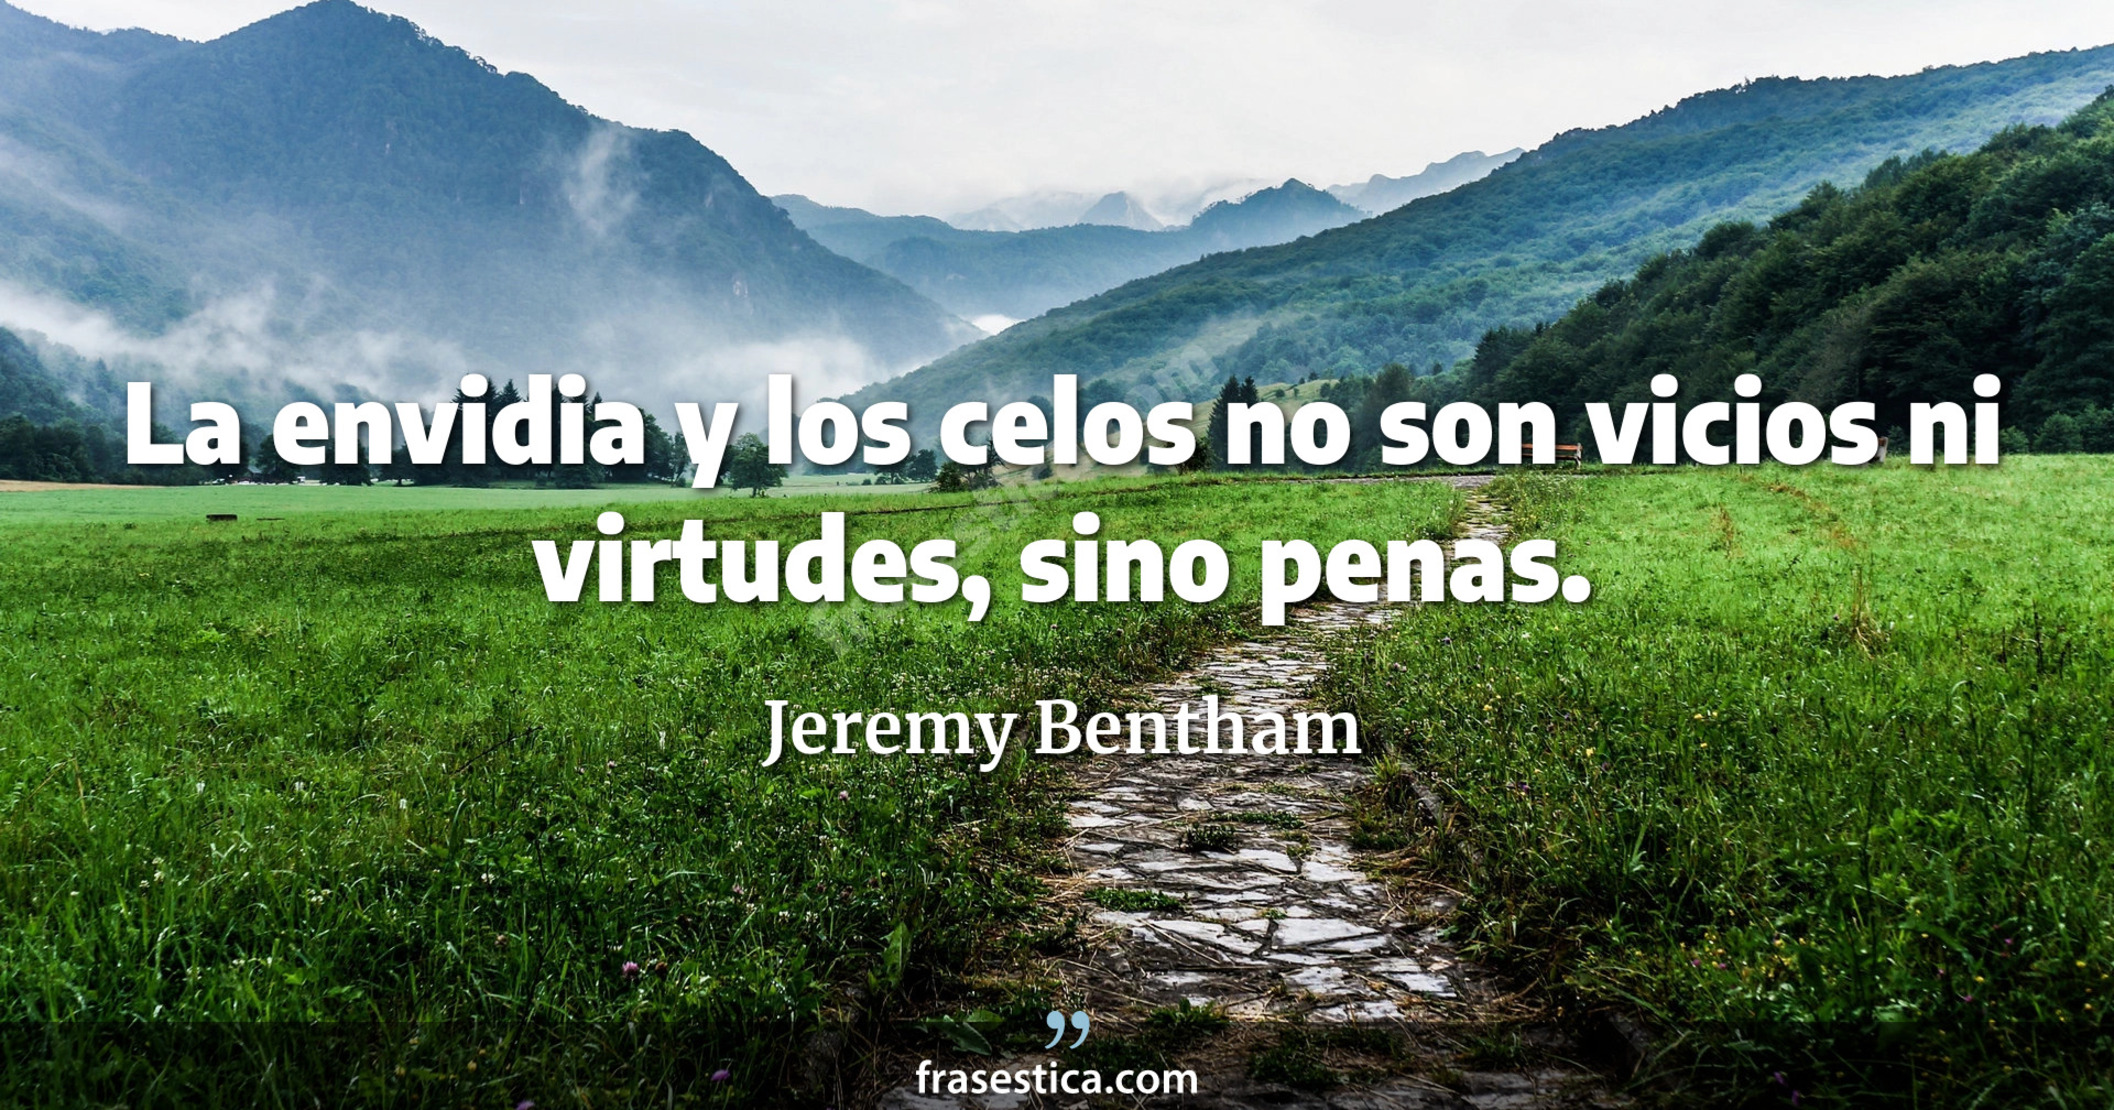 La envidia y los celos no son vicios ni virtudes, sino penas. - Jeremy Bentham